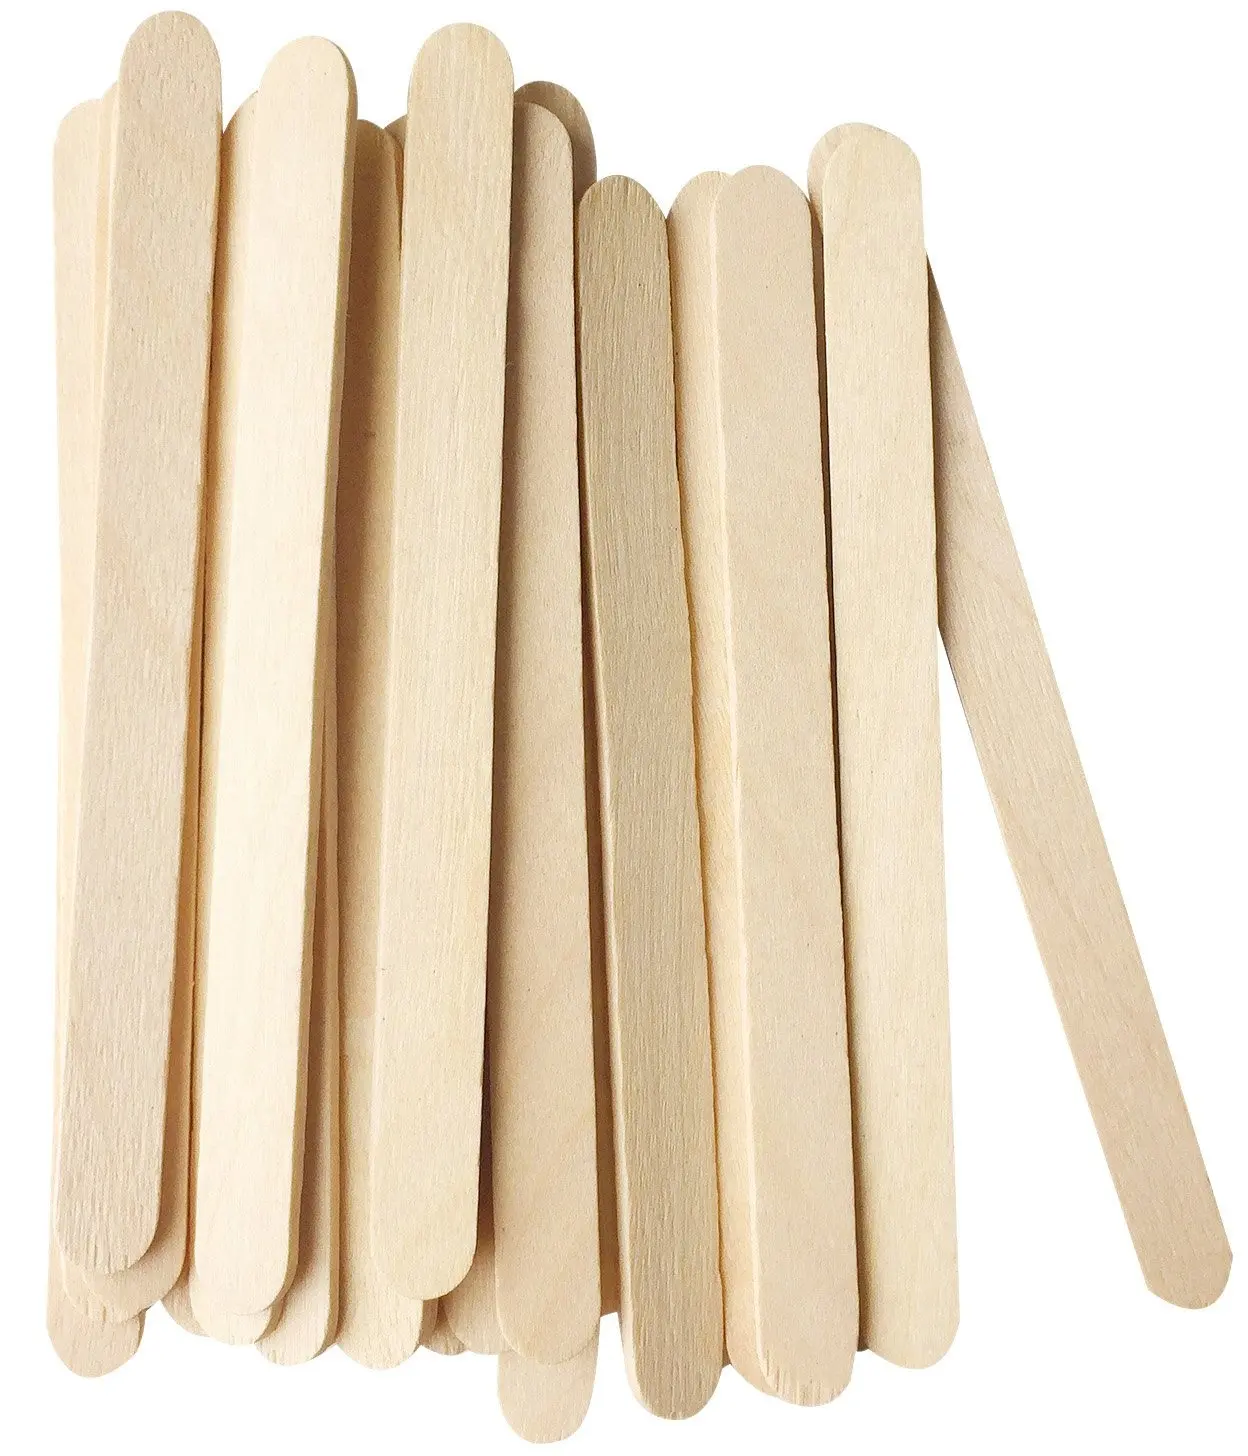 Natural de madera palos de helado 93mm de longitud de borde recto palos de helado por KarlNiko (paquete de 50 piezas)